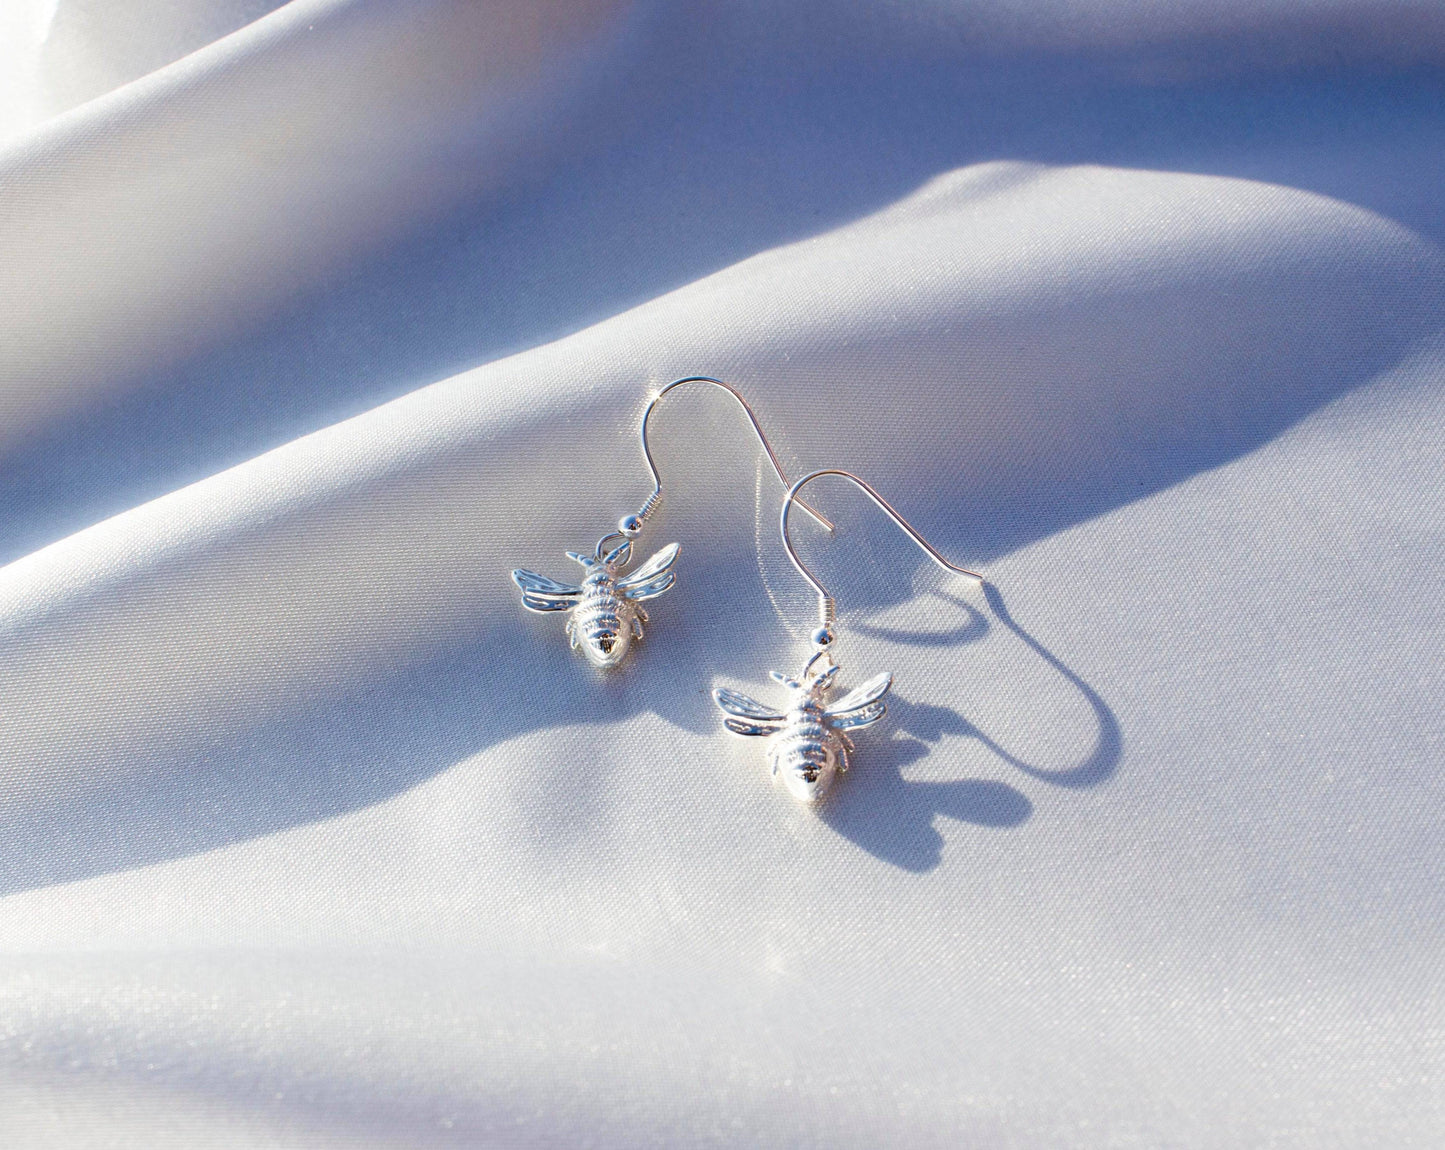 Bee 3D Silver Earrings - MYLEE London